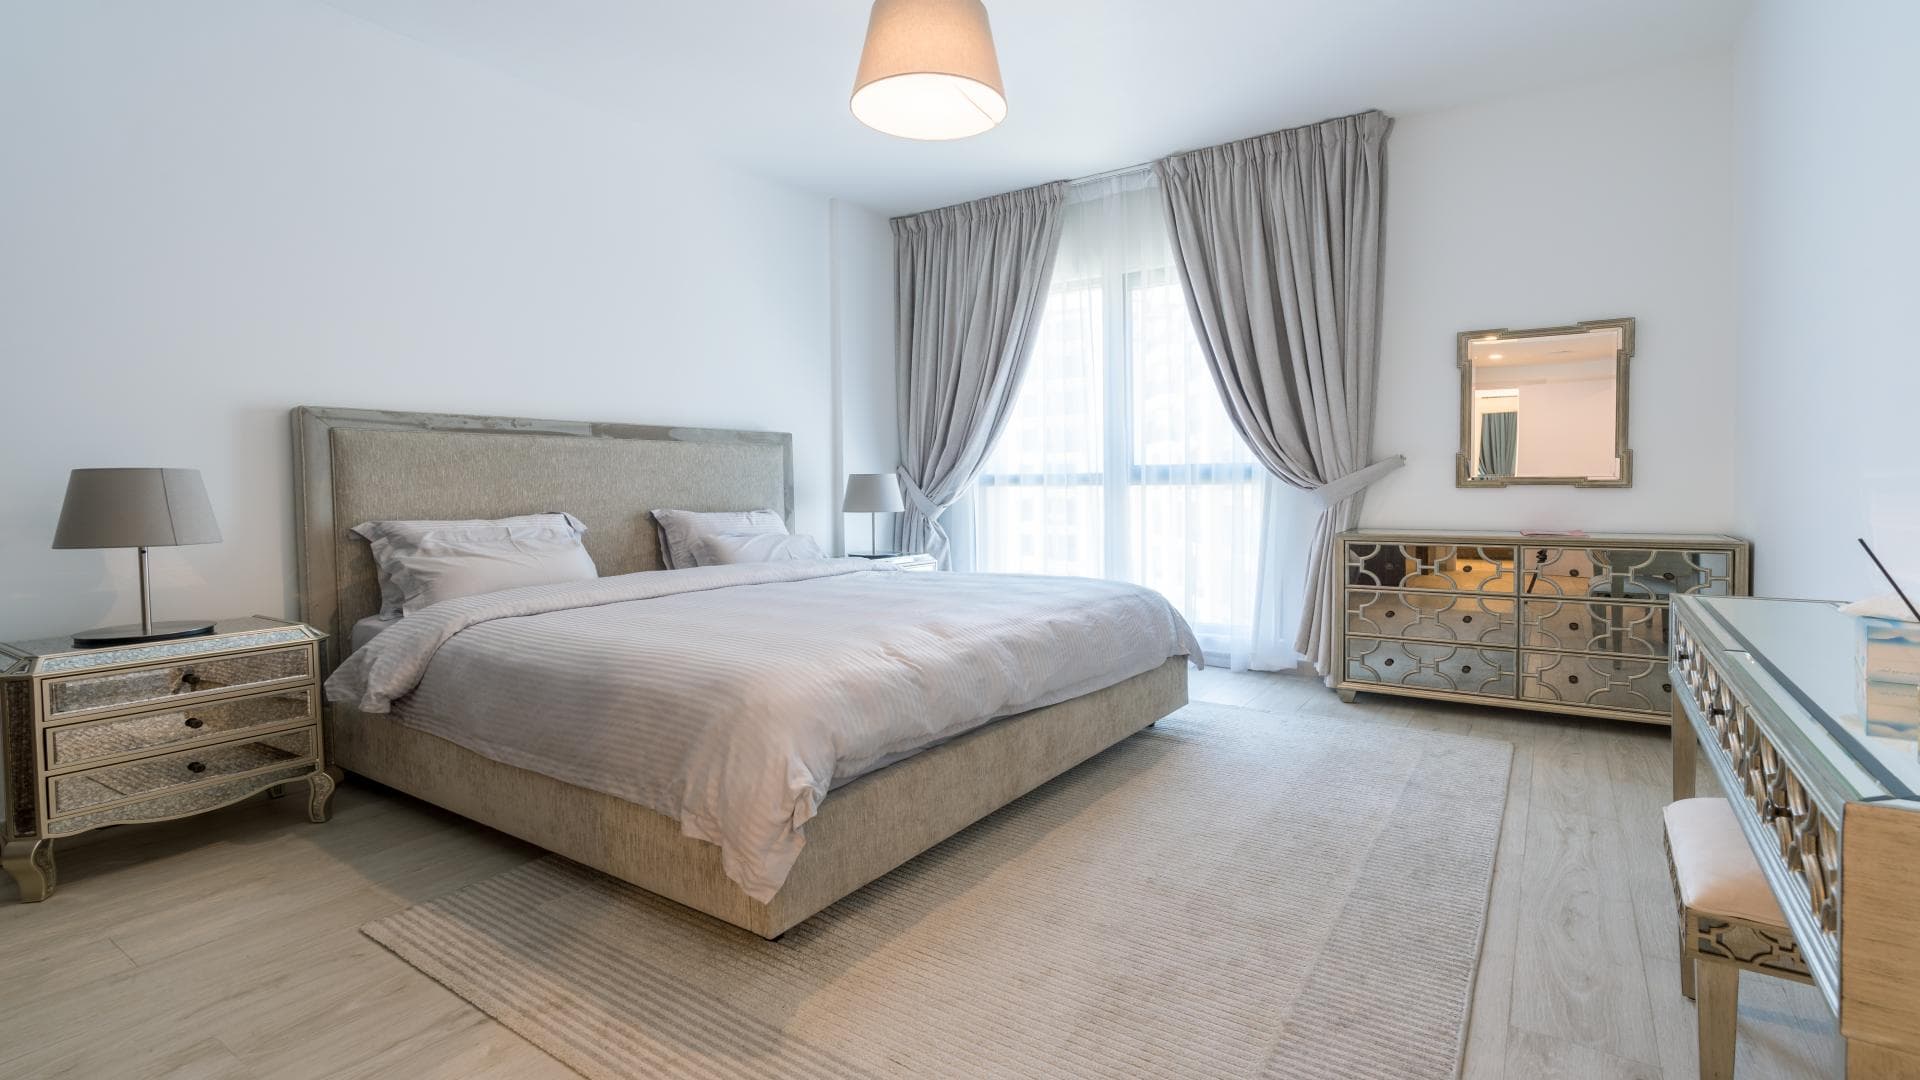 2 Bedroom Apartment For Rent Madinat Jumeirah Living Lp32743 1cf643db19a4ca00.jpg